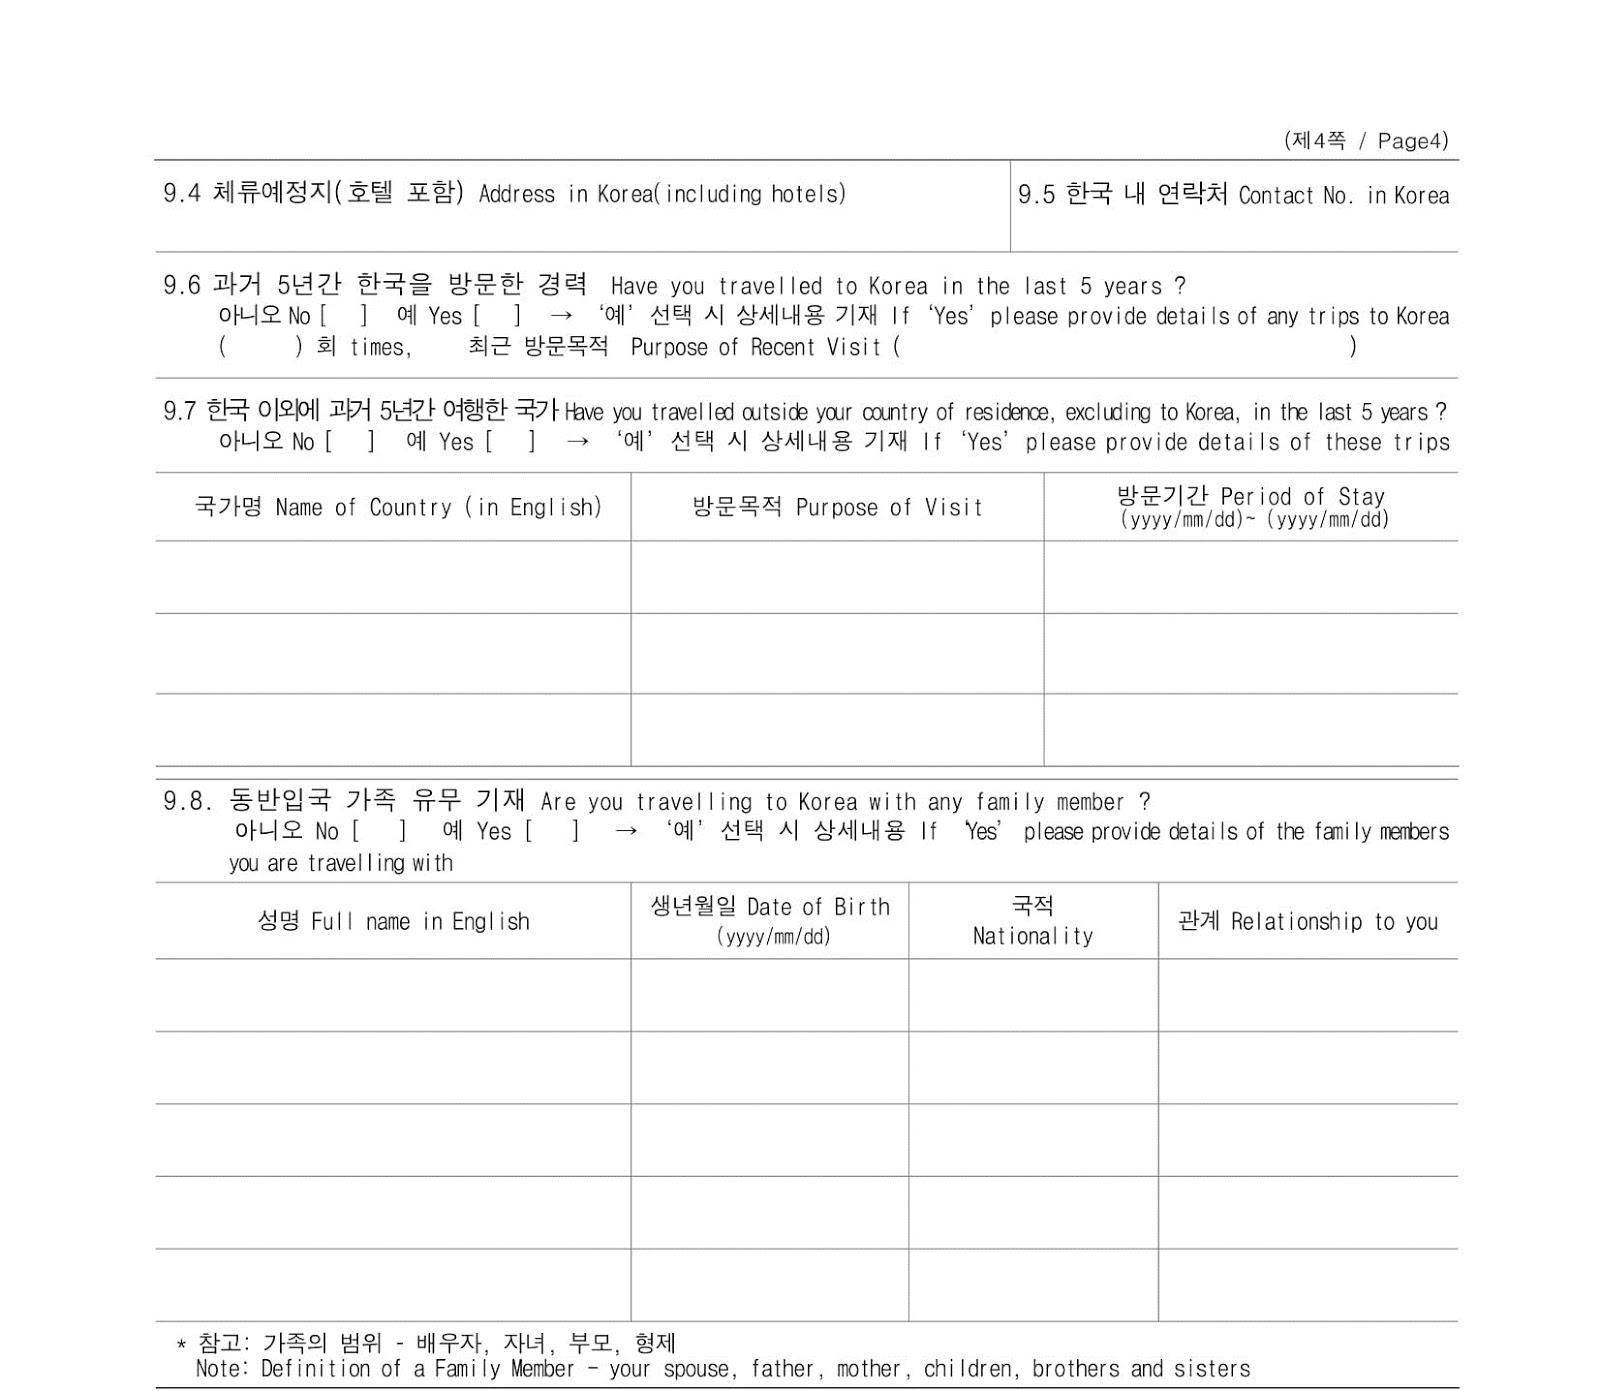 Setelah mendapat informasi yang lengkap mengenai siapa diri kamu maka bagian selanjutnya akan bertanya mengenai detail kepergian kamu ke Korea